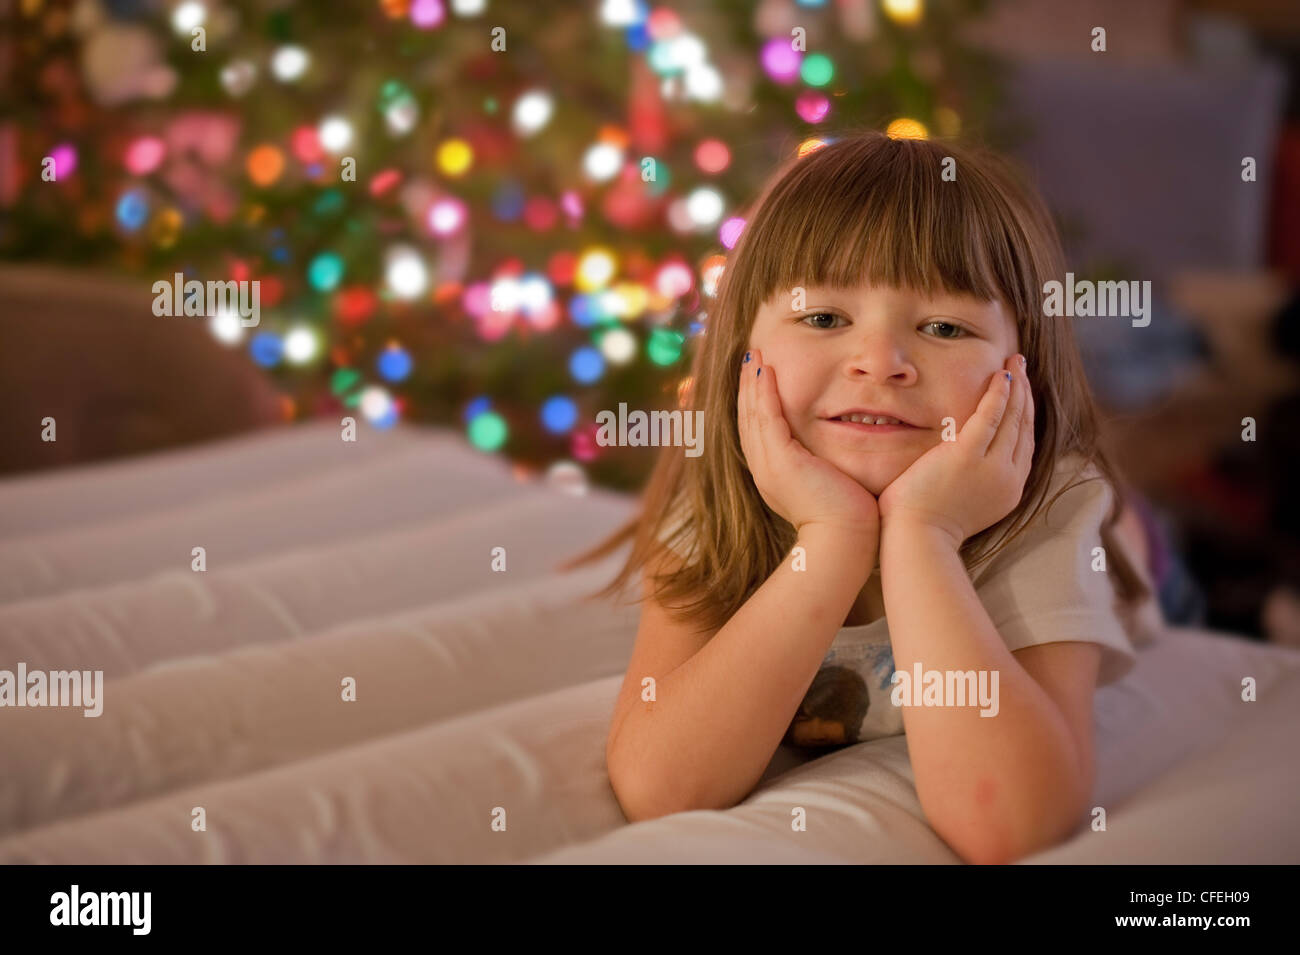 Carino 5 anno vecchia ragazza in posa davanti un colorato albero di natale e le luci. Foto Stock